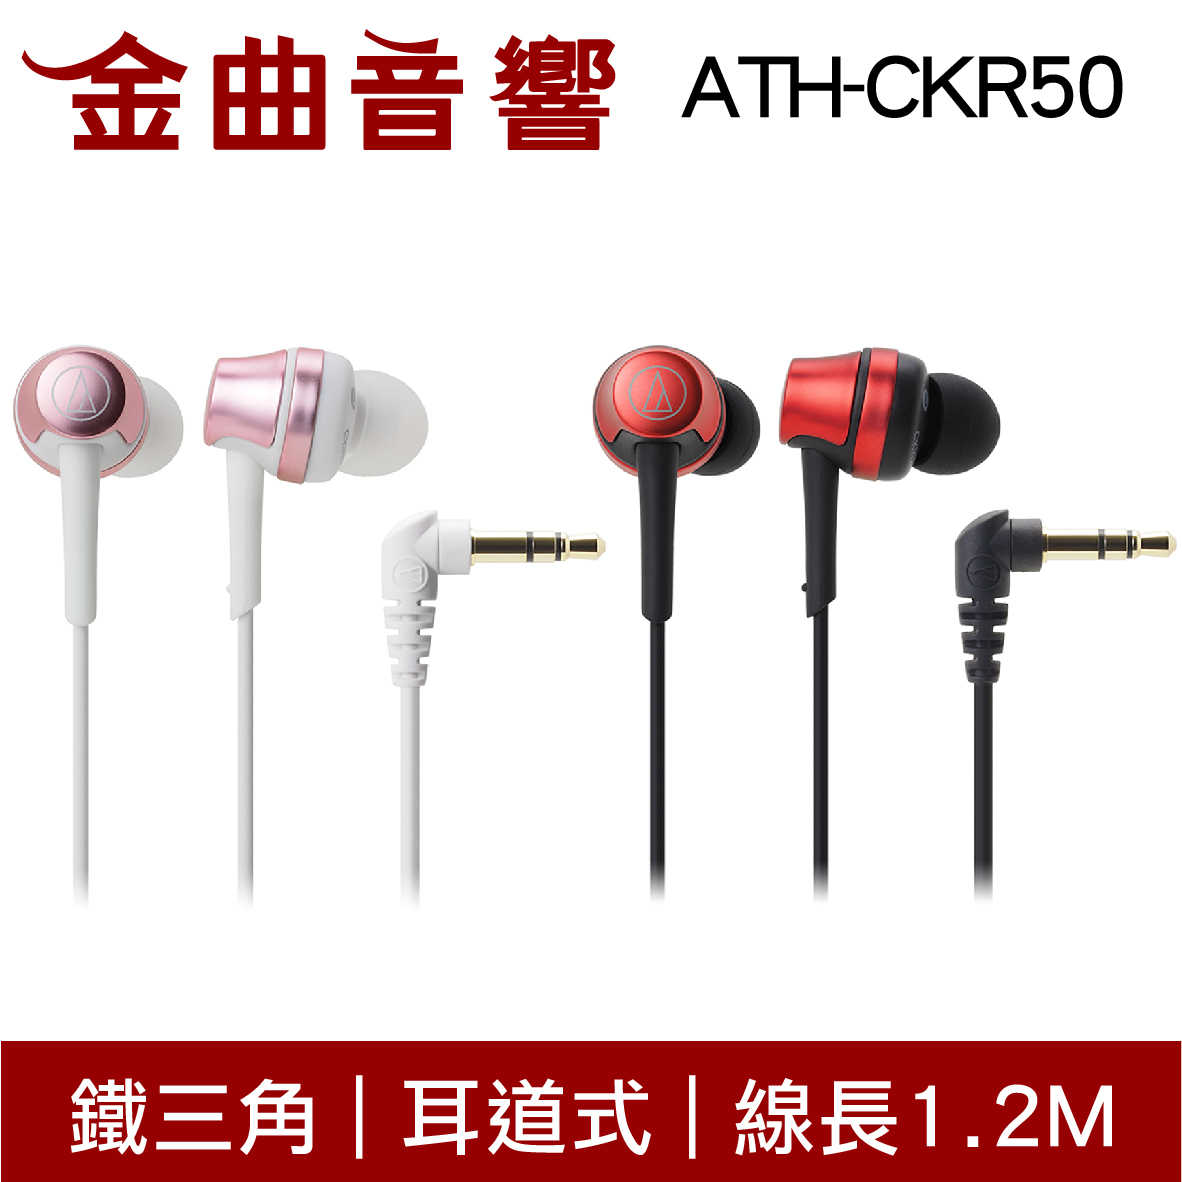 鐵三角 ATH-CKR50 多色可選 耳道式耳機 | 金曲音響